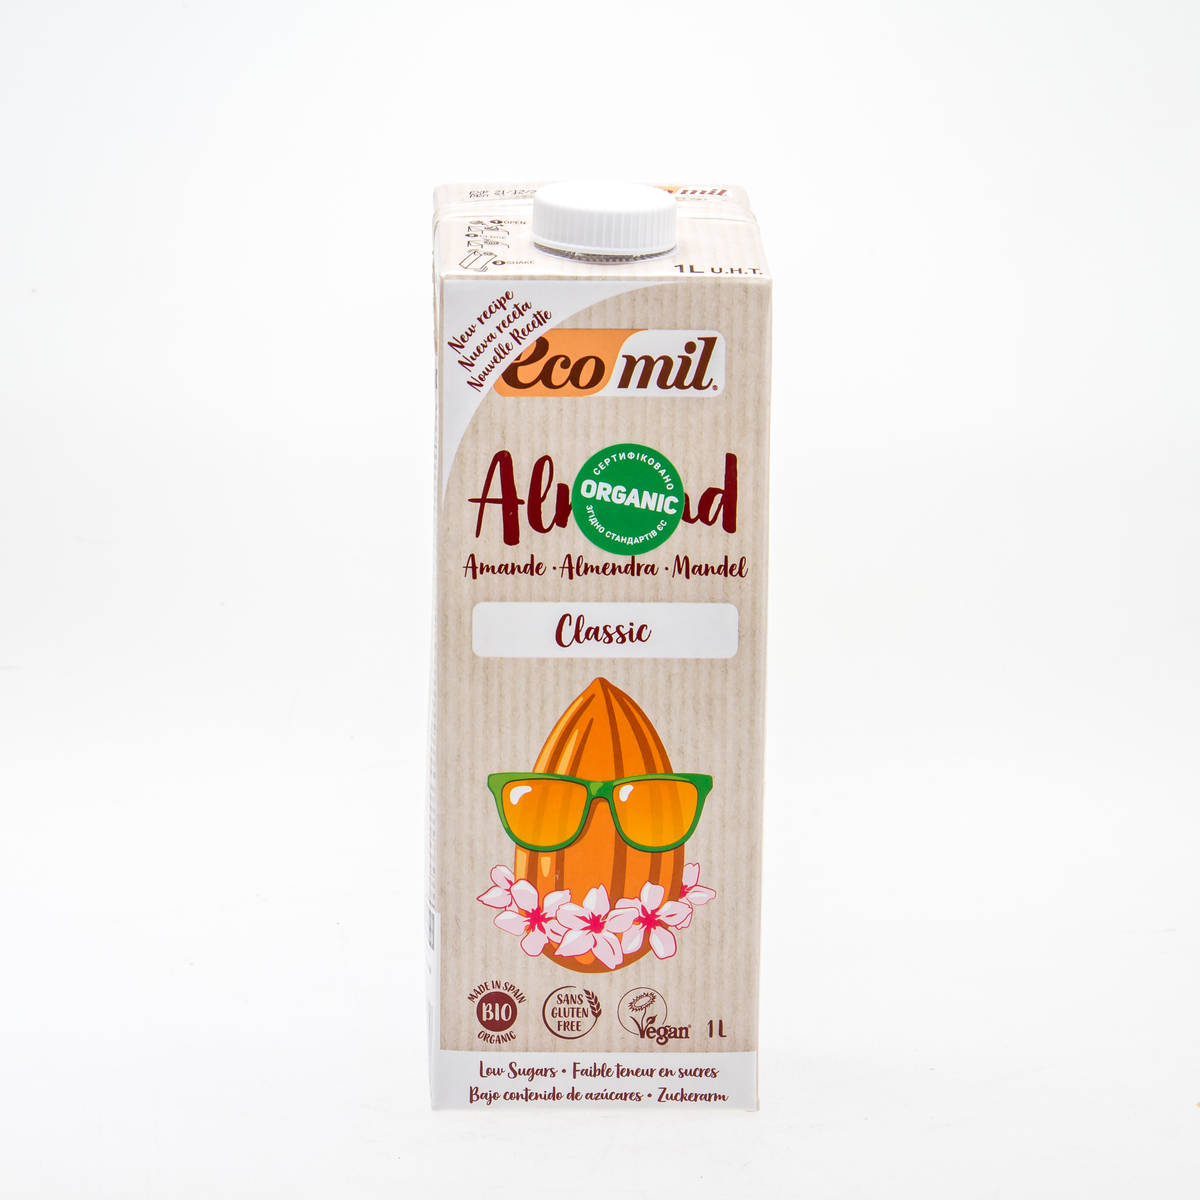 Органічне рослинне молоко з мигдалю класичне,1л - купить в интернет-магазине Юнимед